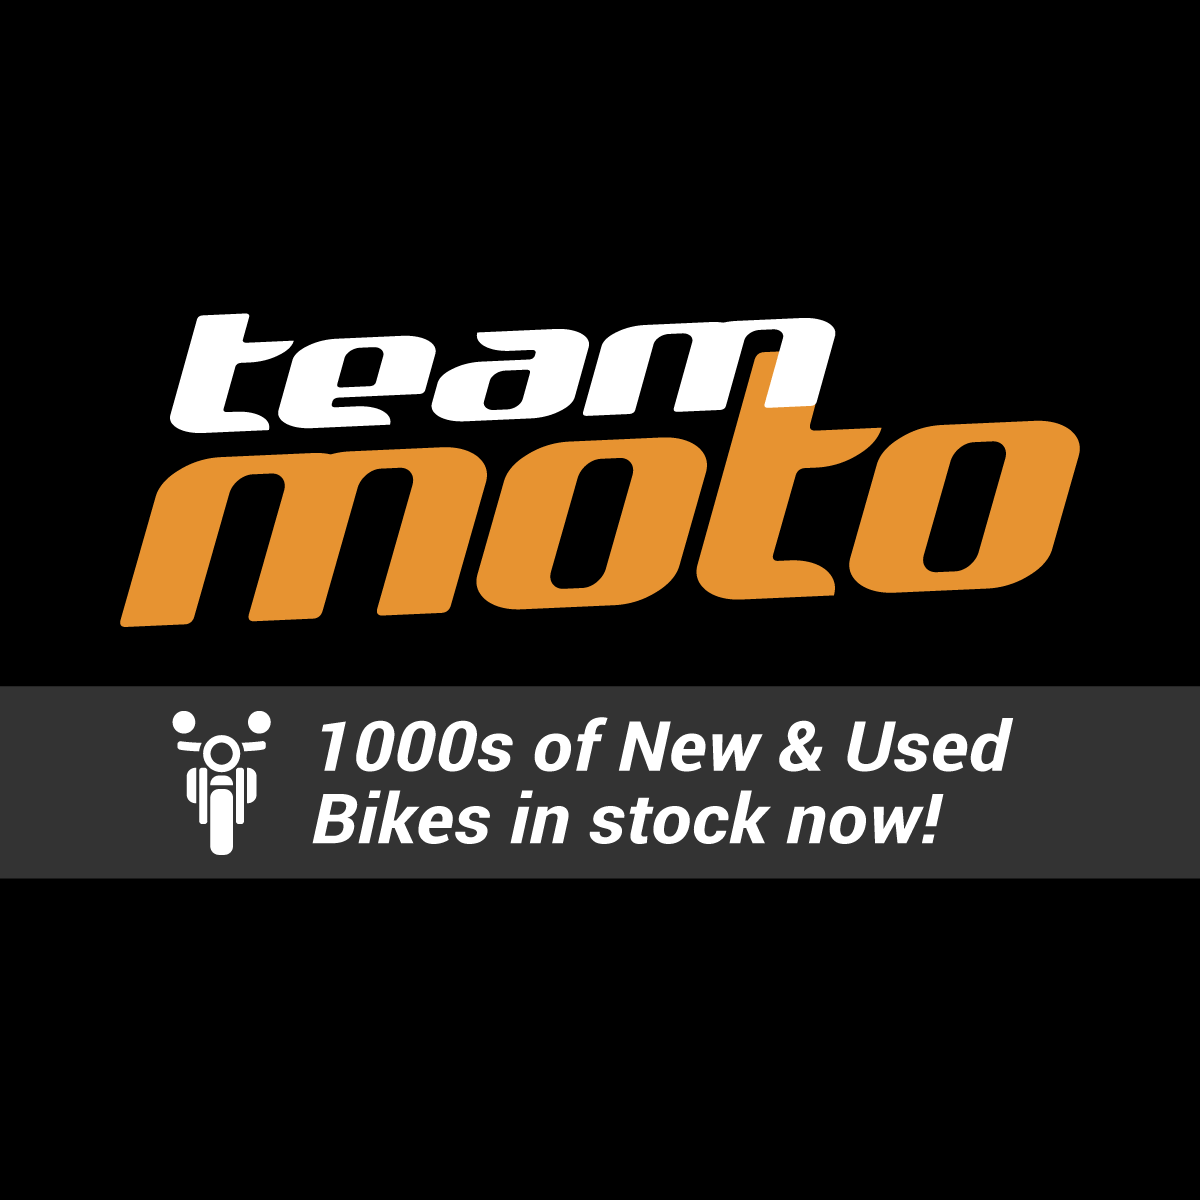 www.teammoto.com.au